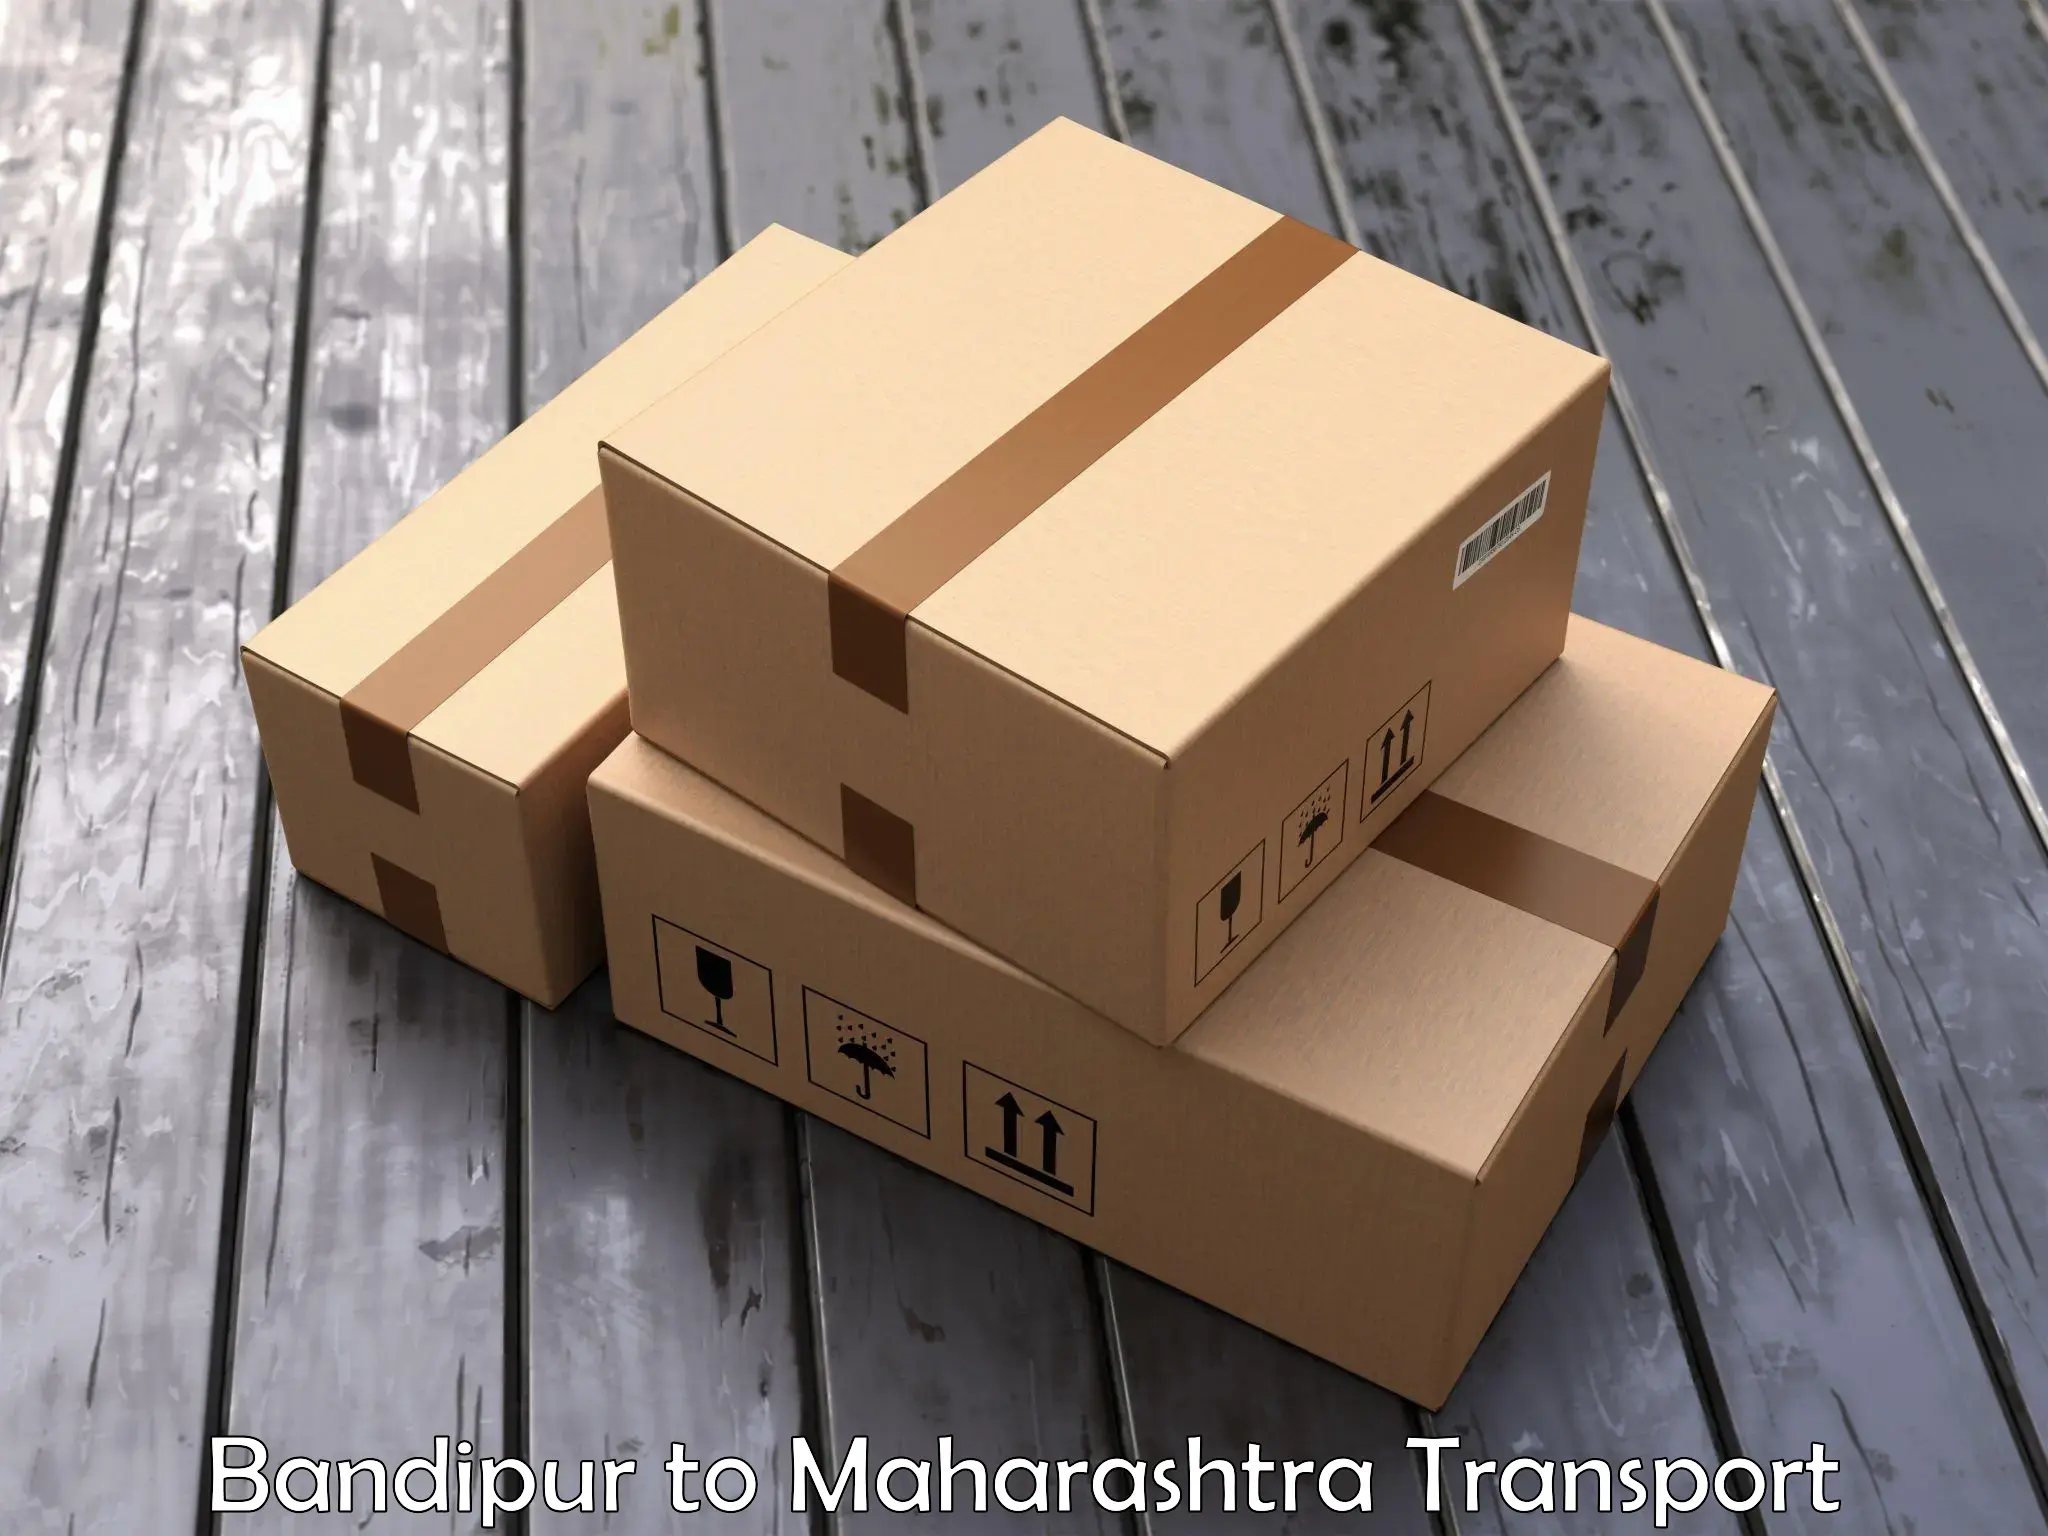 Furniture transport service Bandipur to Ramtek